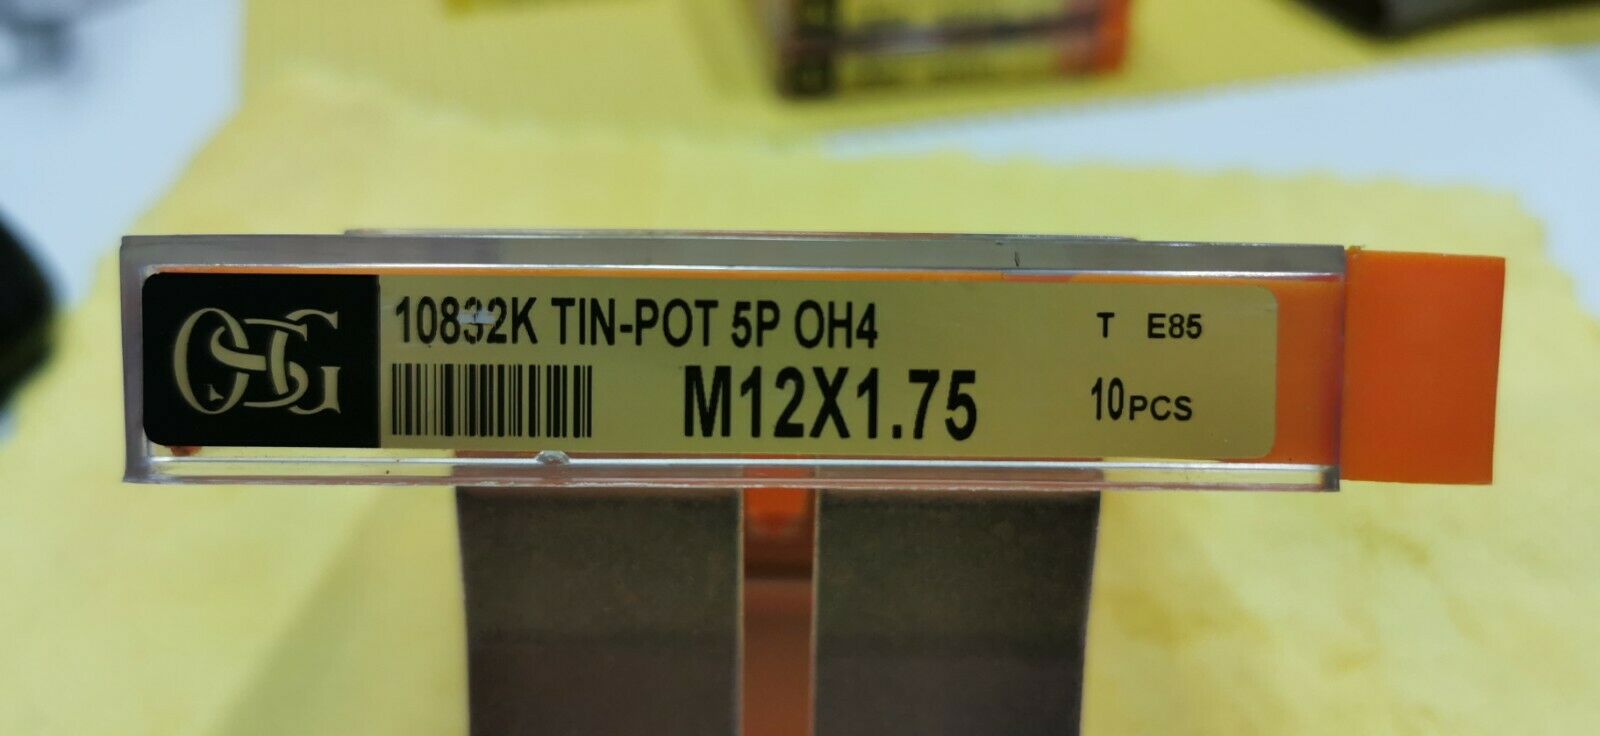 Osg 10832k M12x1.75 Tin-pot 5p Oh4 Machine Tap 1pcs